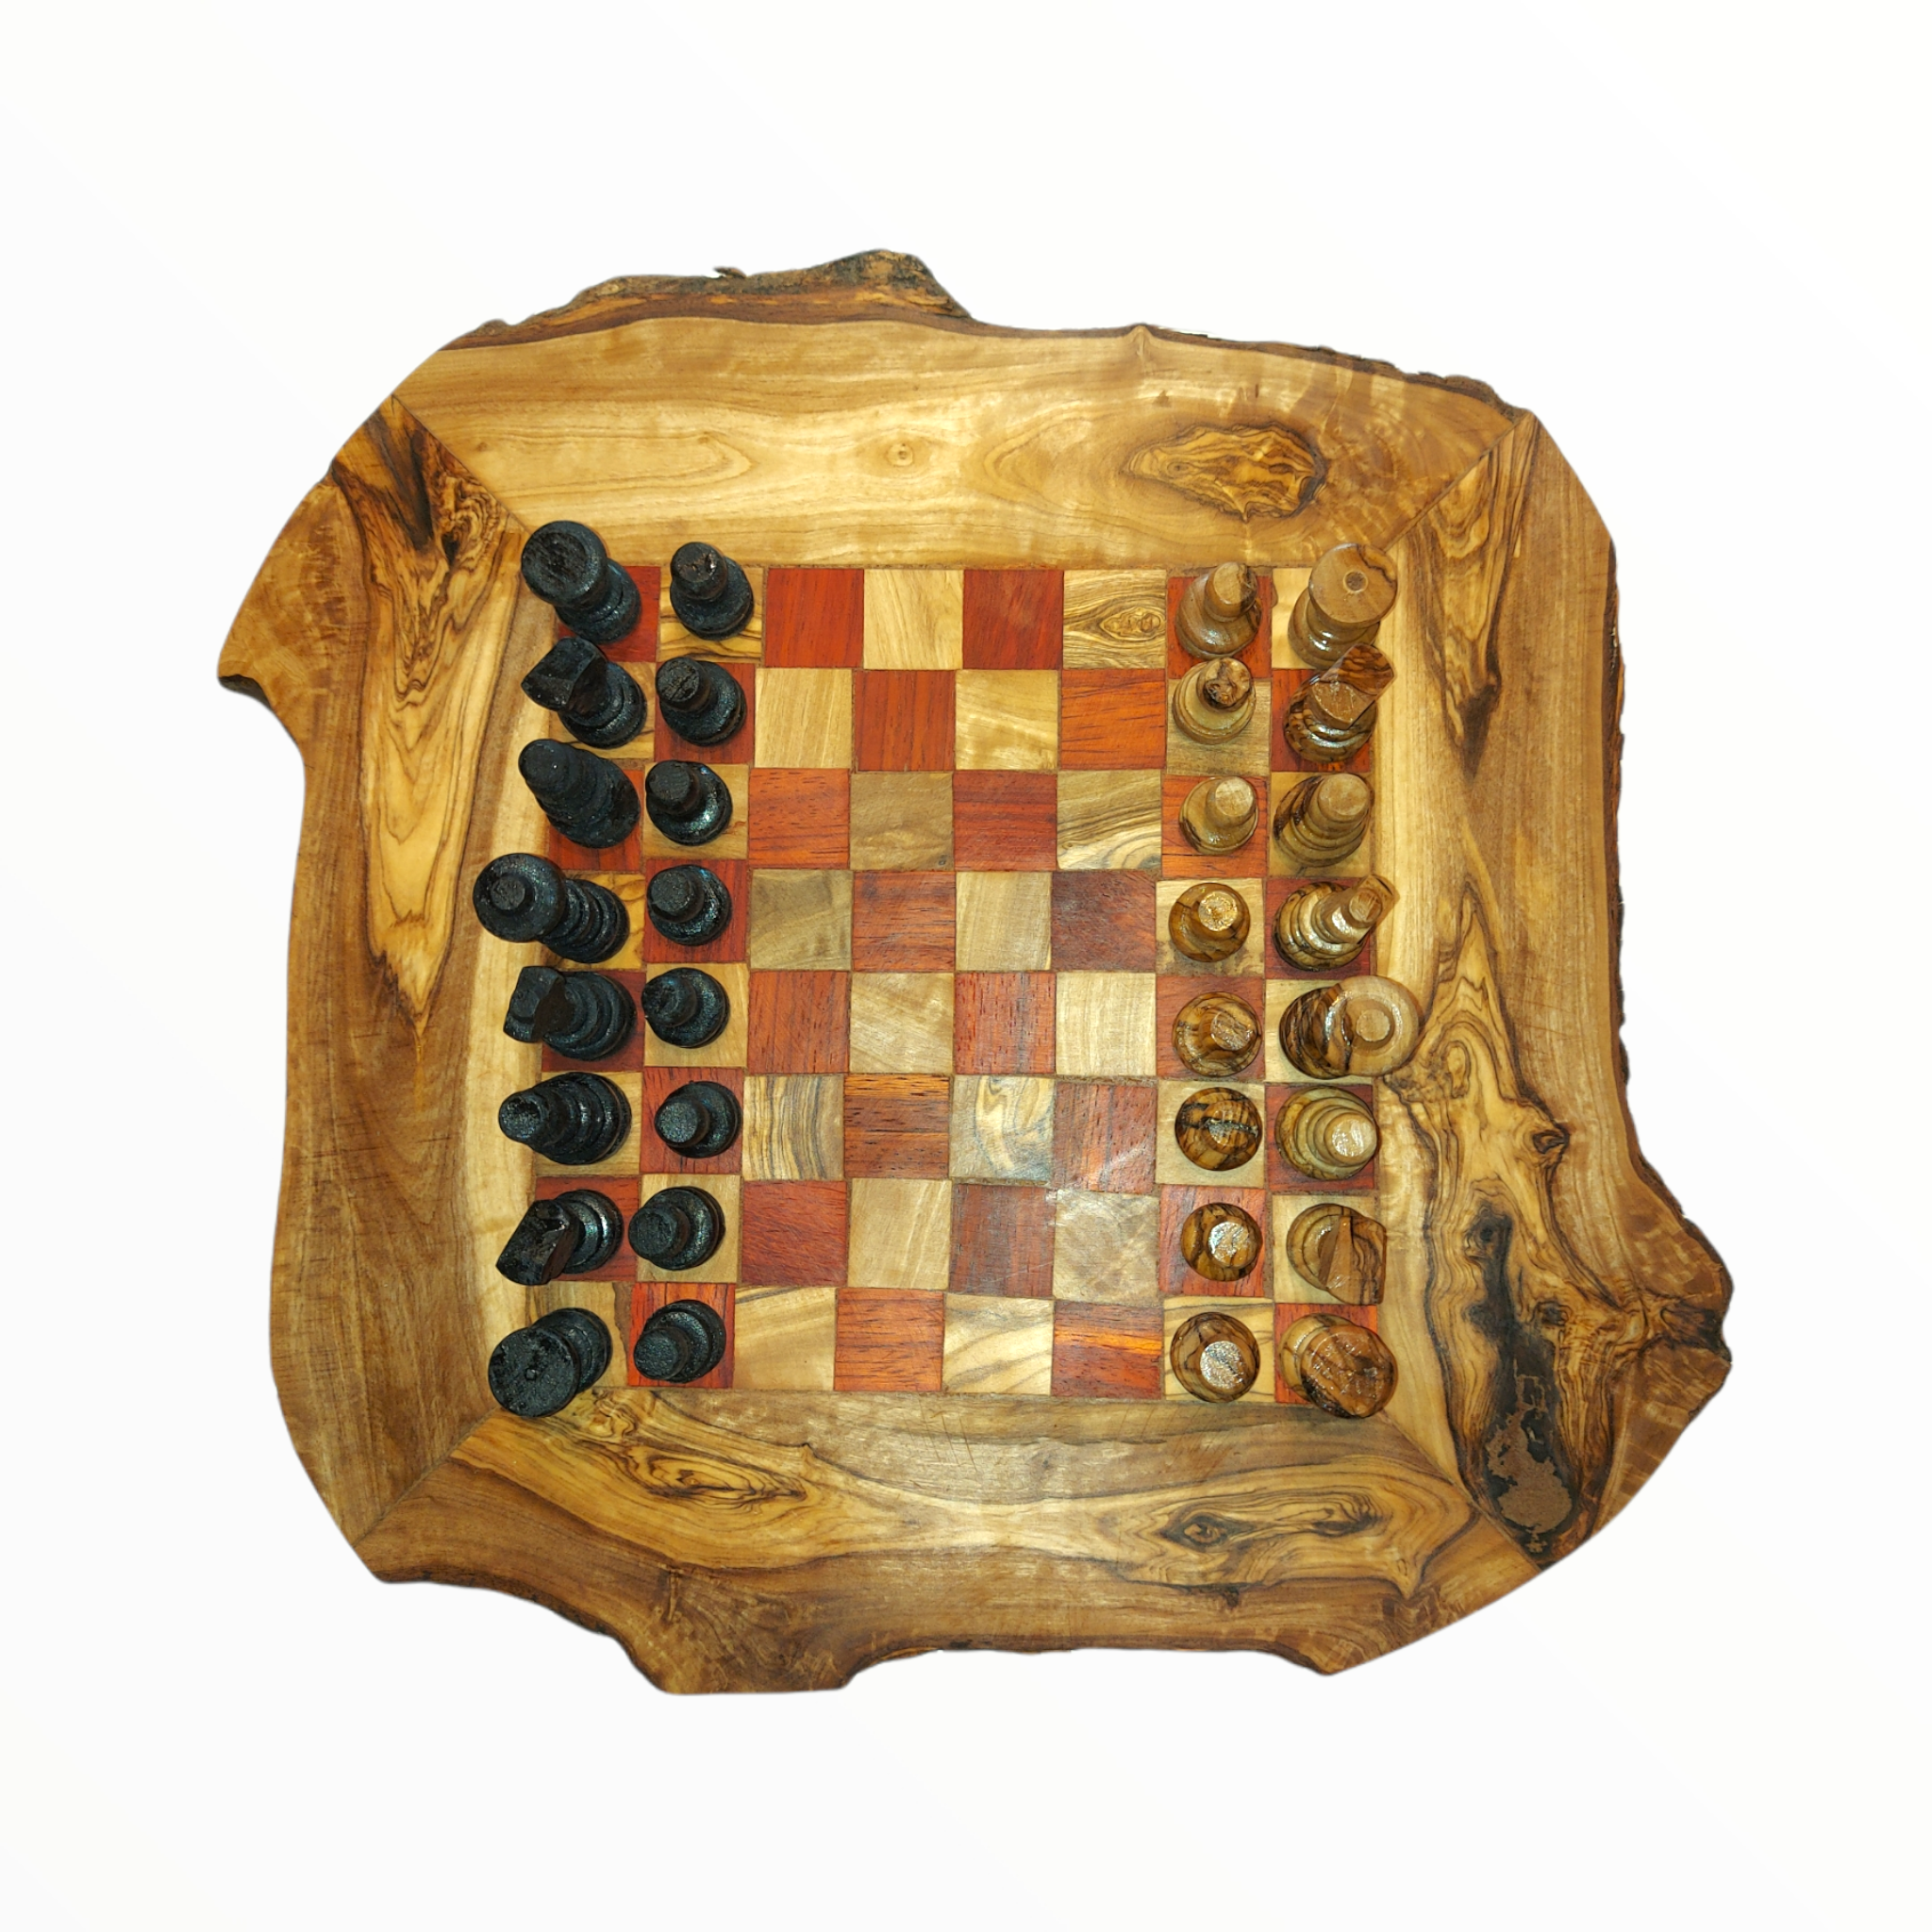 Handgemaakte Olijfhouten Rustic Schaakbord Schaak stukken - Rood 30 cm Gratis Beeswax ) - Handwerkmarkt